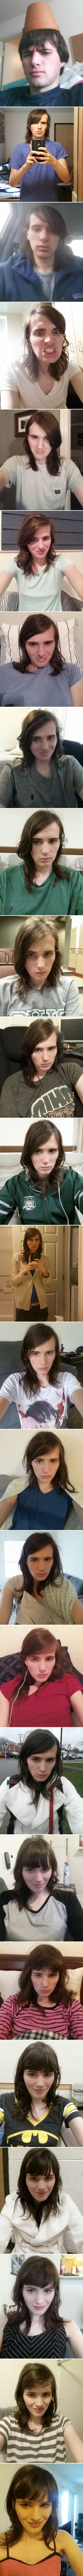 Mladić slikao svoju nevjerojatnu transformaciju u drugi spol, njen izraz lica na zadnjoj slici je neprocjenjiv